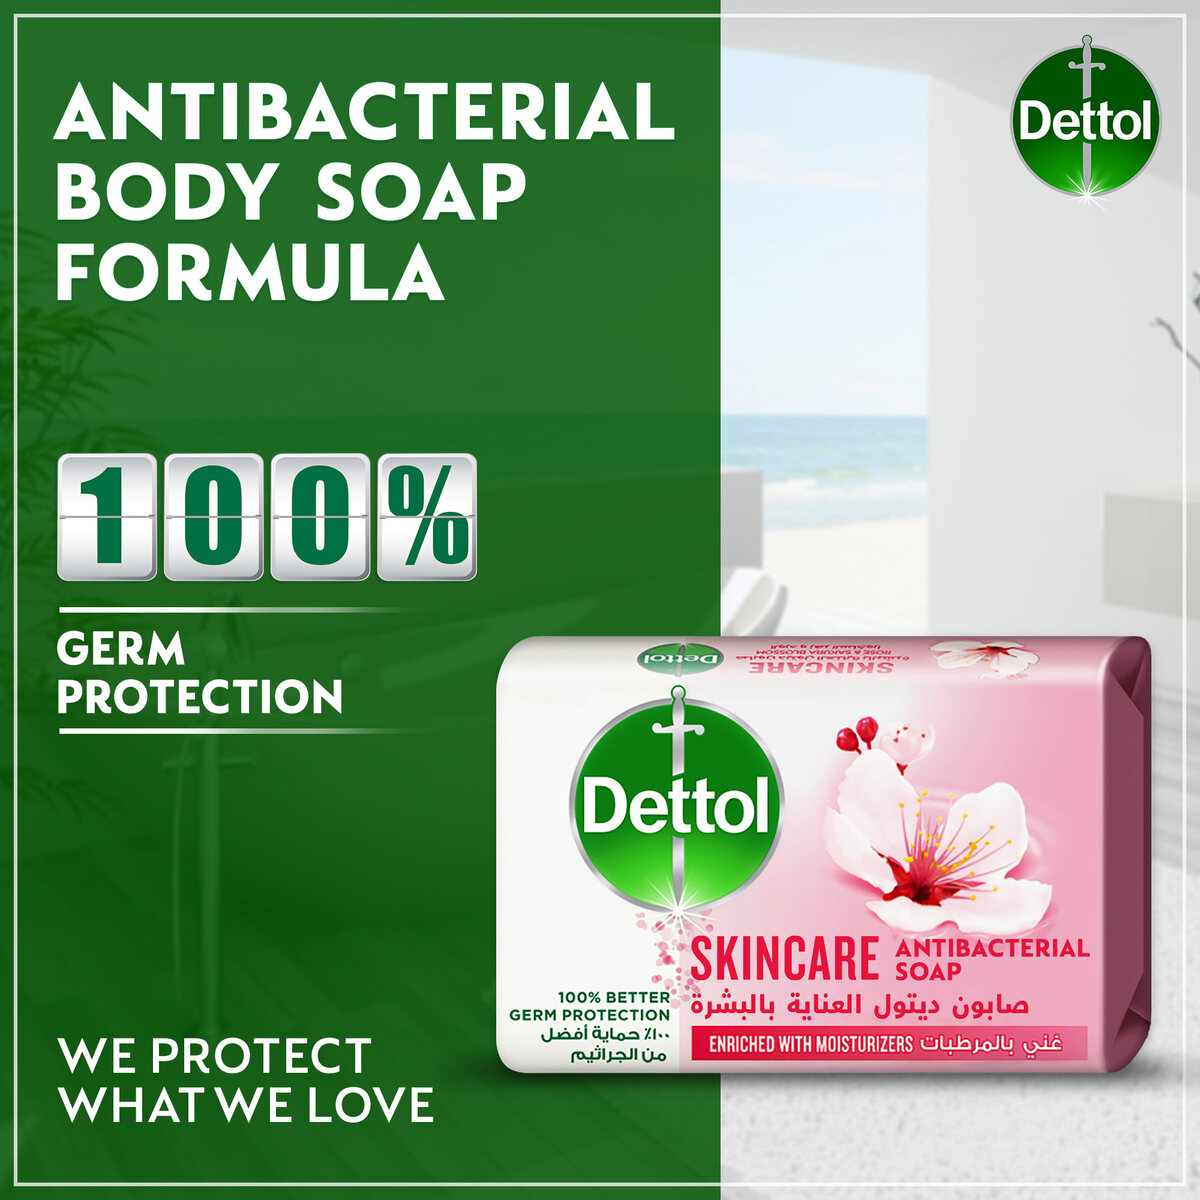 Dettol Skincare Anti-Bacterial Bathing Soap Bar Rose & Sakura Blossom Fragrance 4 x 120 g